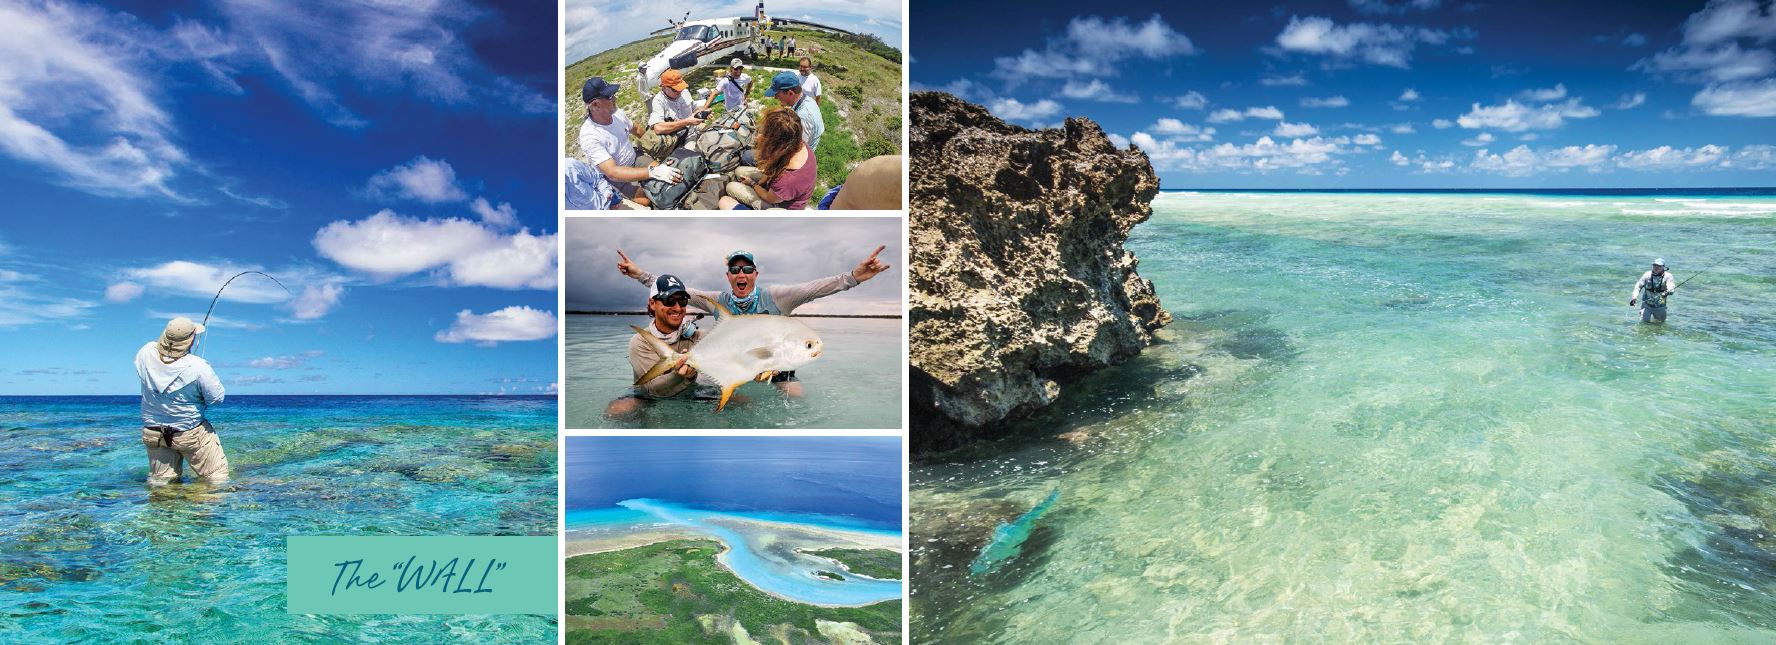 Astove-Atoll-The-Wall-Alphonse-Fishing-Company-Seychelles